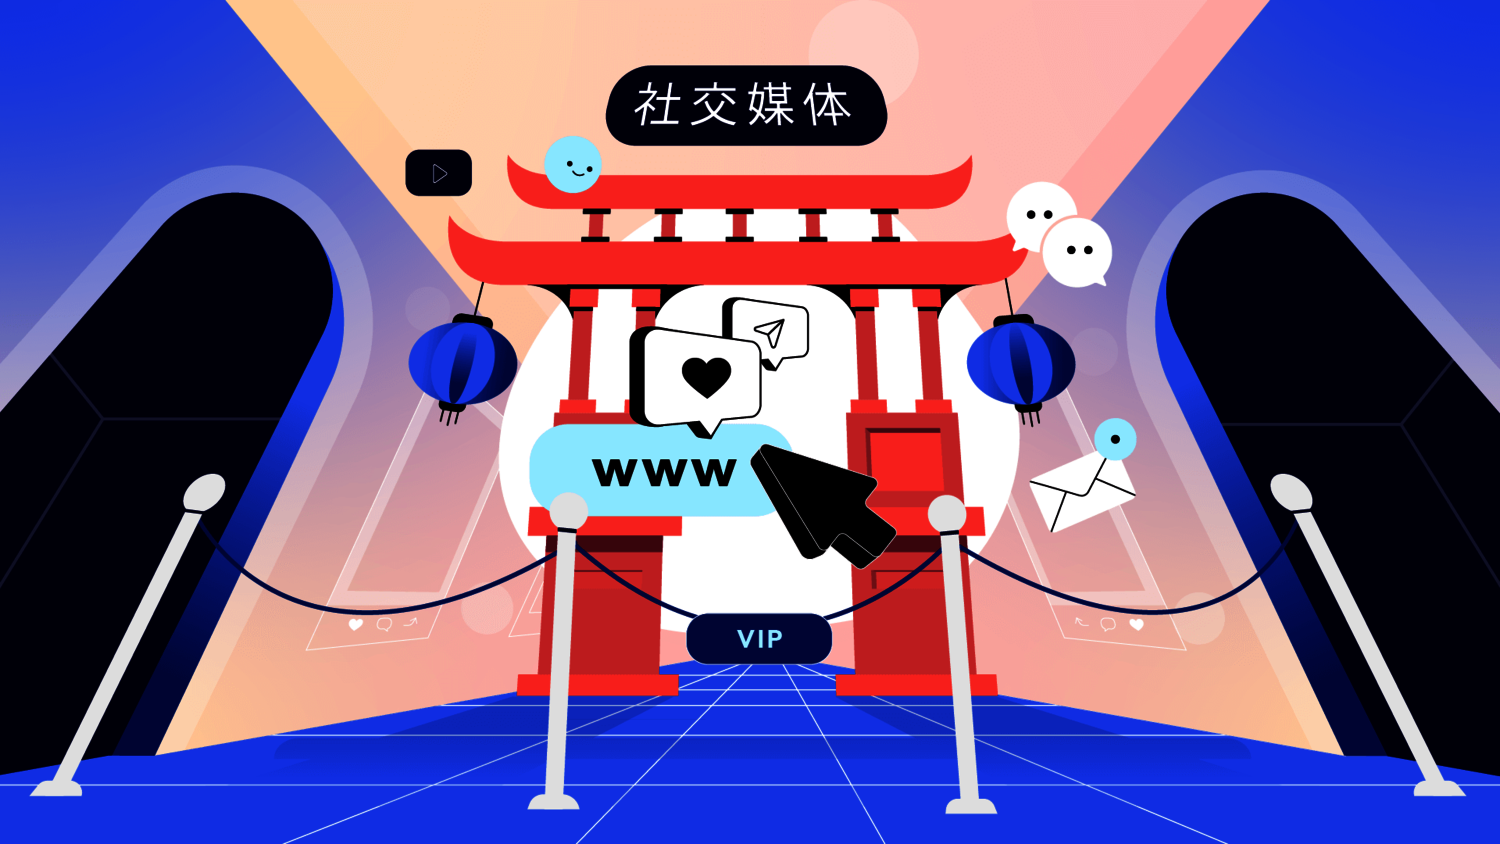 Grafik zeigt ein chinesisches Tor umgeben von Chat-, Mail-. Website- und Social-Icons.